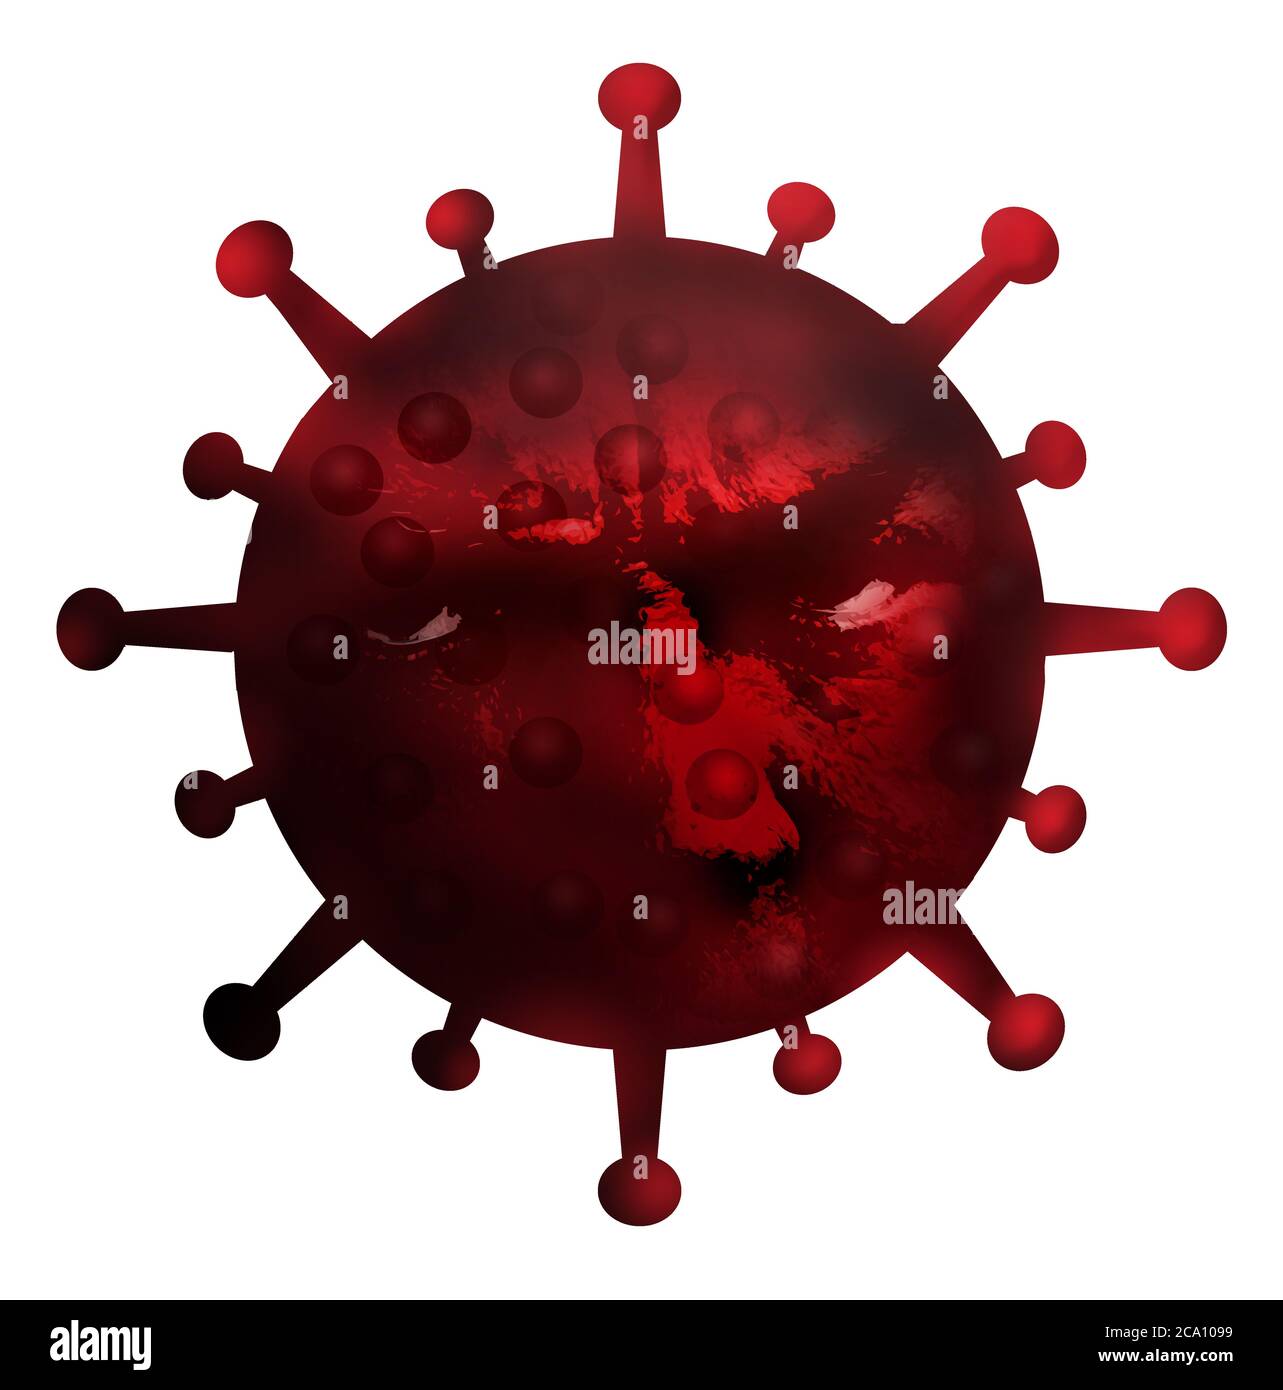 Augen und eine Nase werden auf einem Coronavirus-Bild gesehen, um ein Gesicht auf die Covid-19 Pandemie zu setzen. Stockfoto